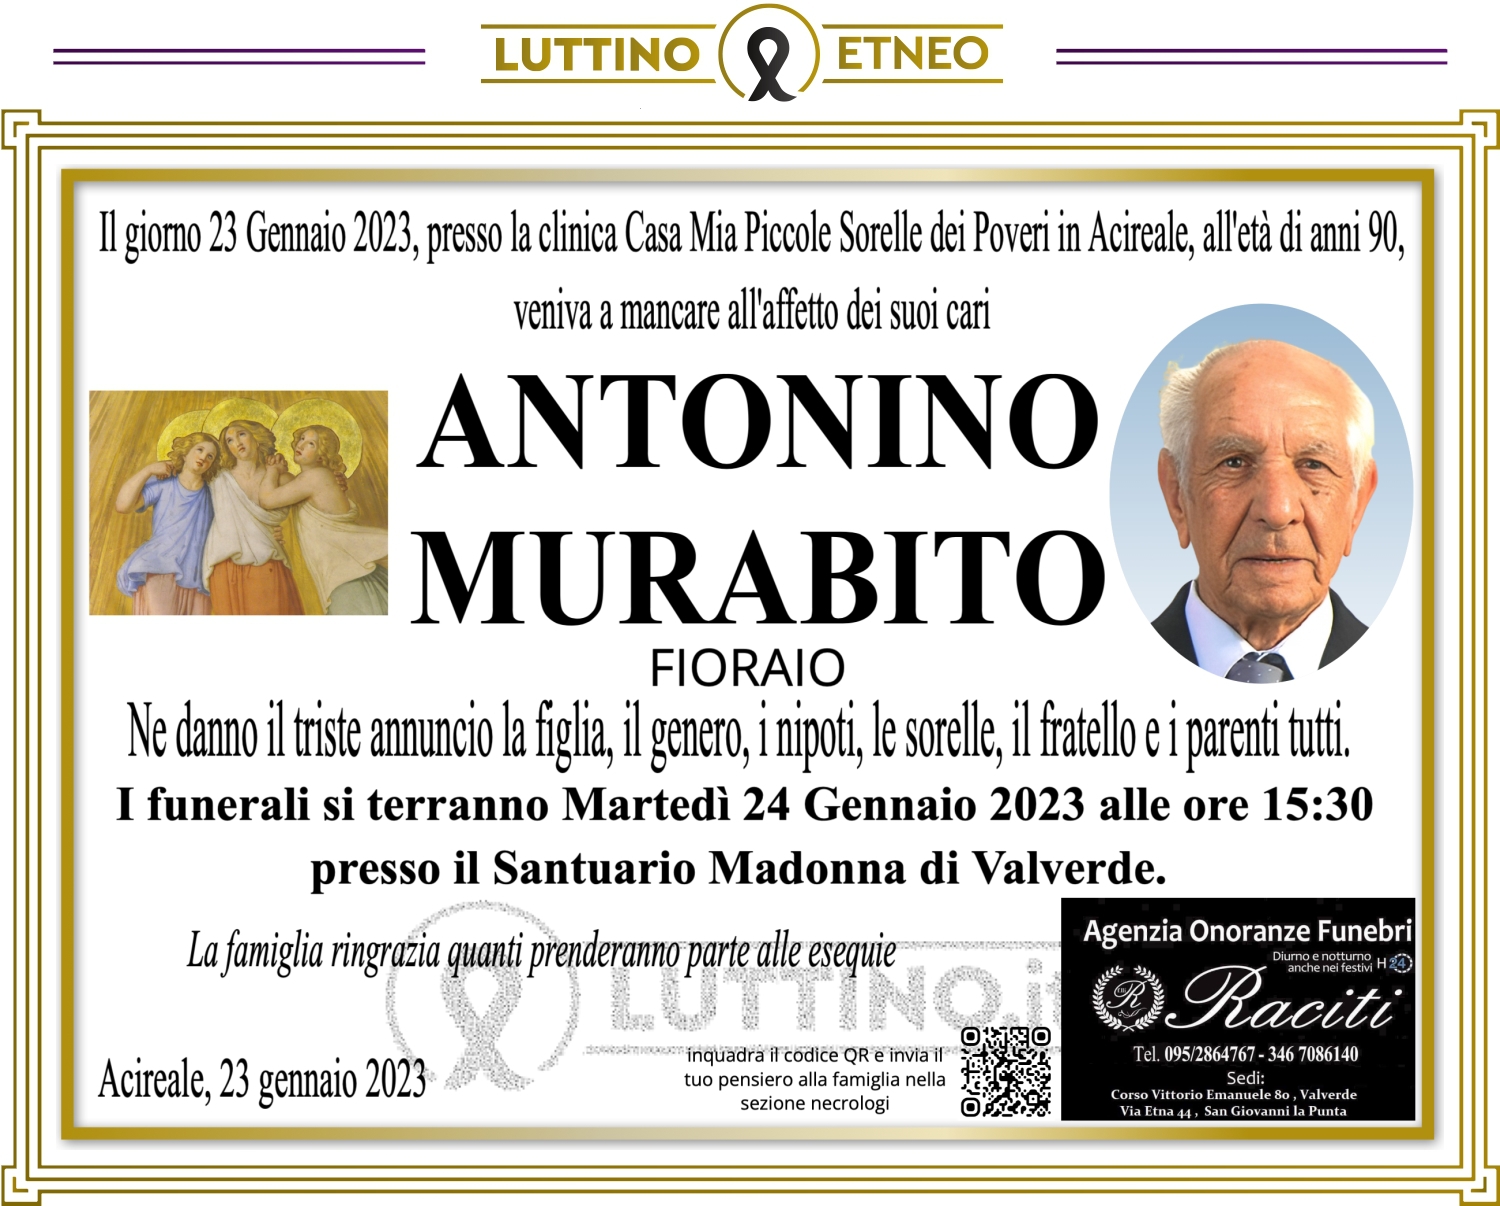 Antonino Murabito